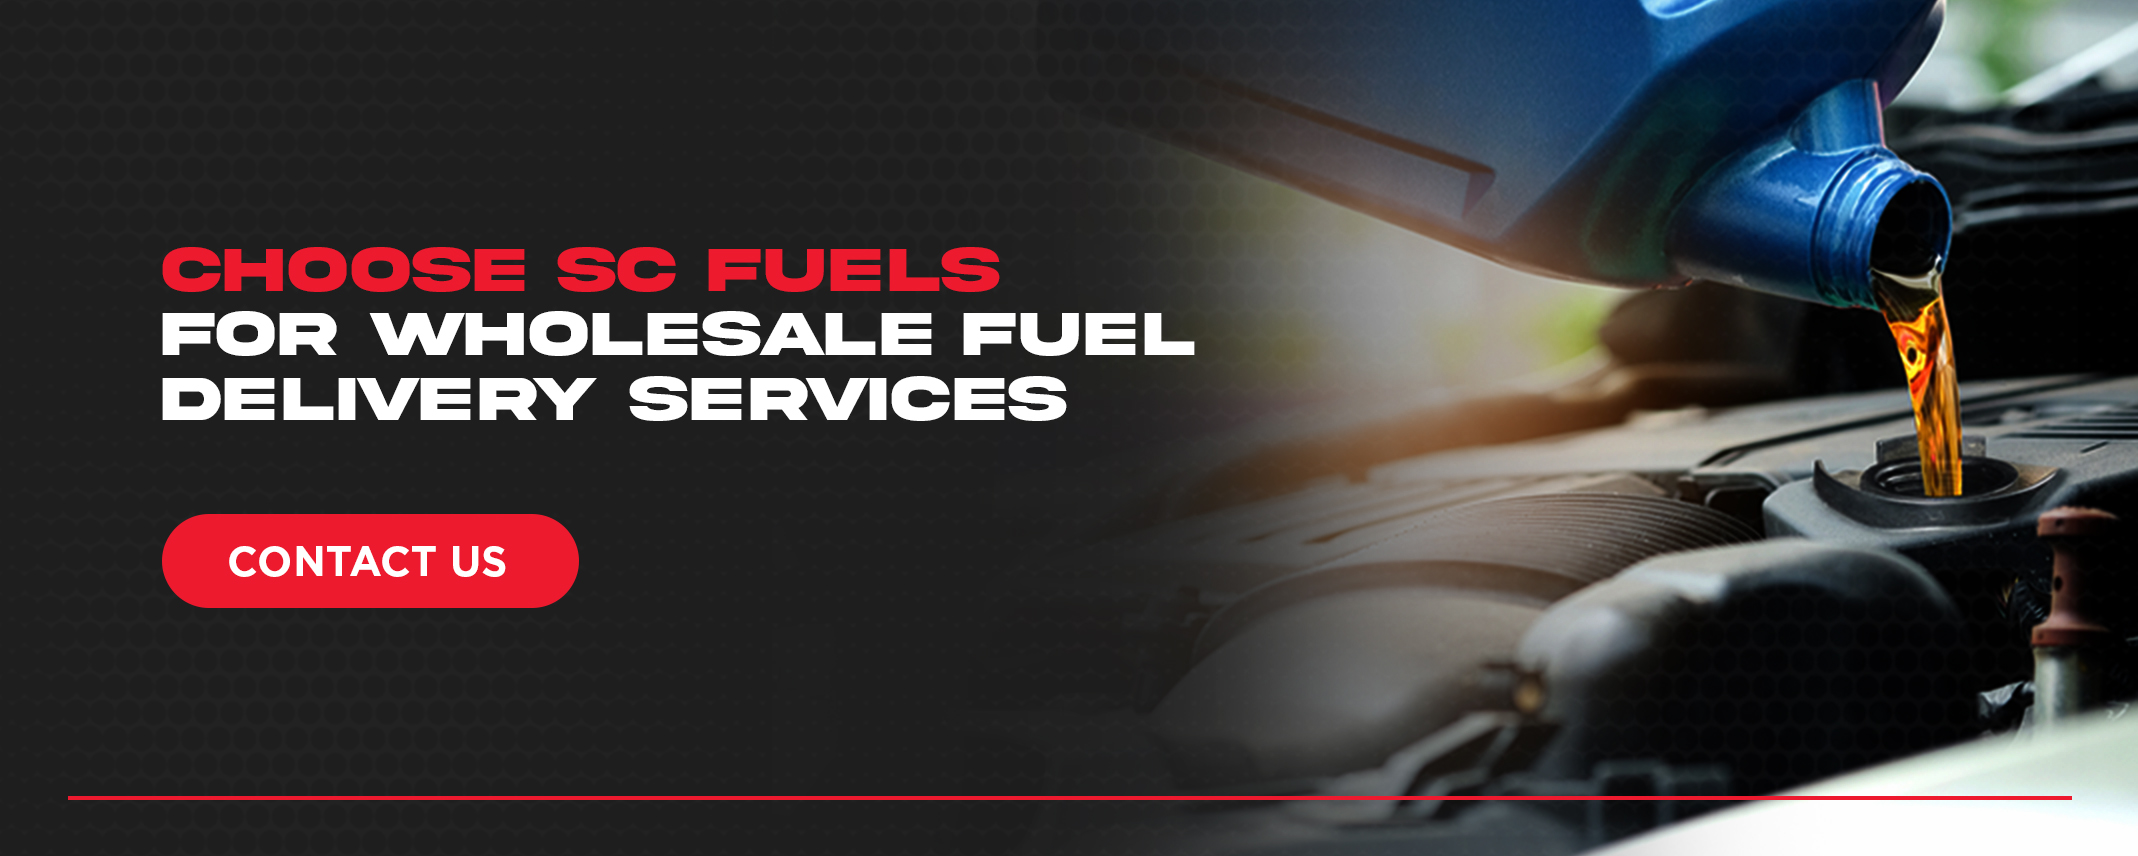 Dyed Diesel vs. Regular Diesel Fuel - SC Fuels